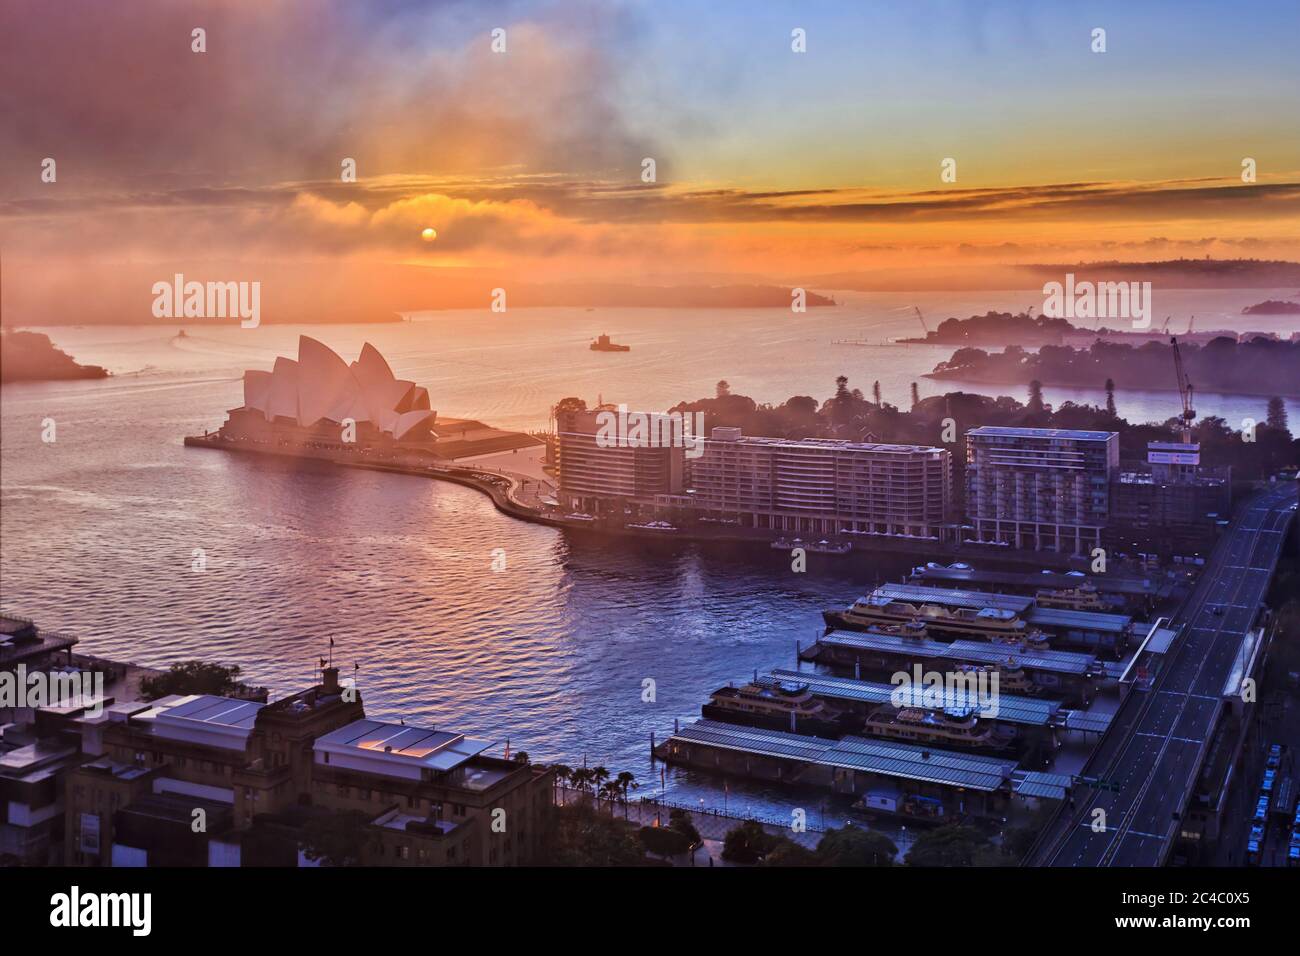 Niebla y nubes al amanecer cubriendo el sol sobre los principales puntos de interés de la ciudad de Sydney, en el muelle Circular Quay del puerto de Sydney. Foto de stock